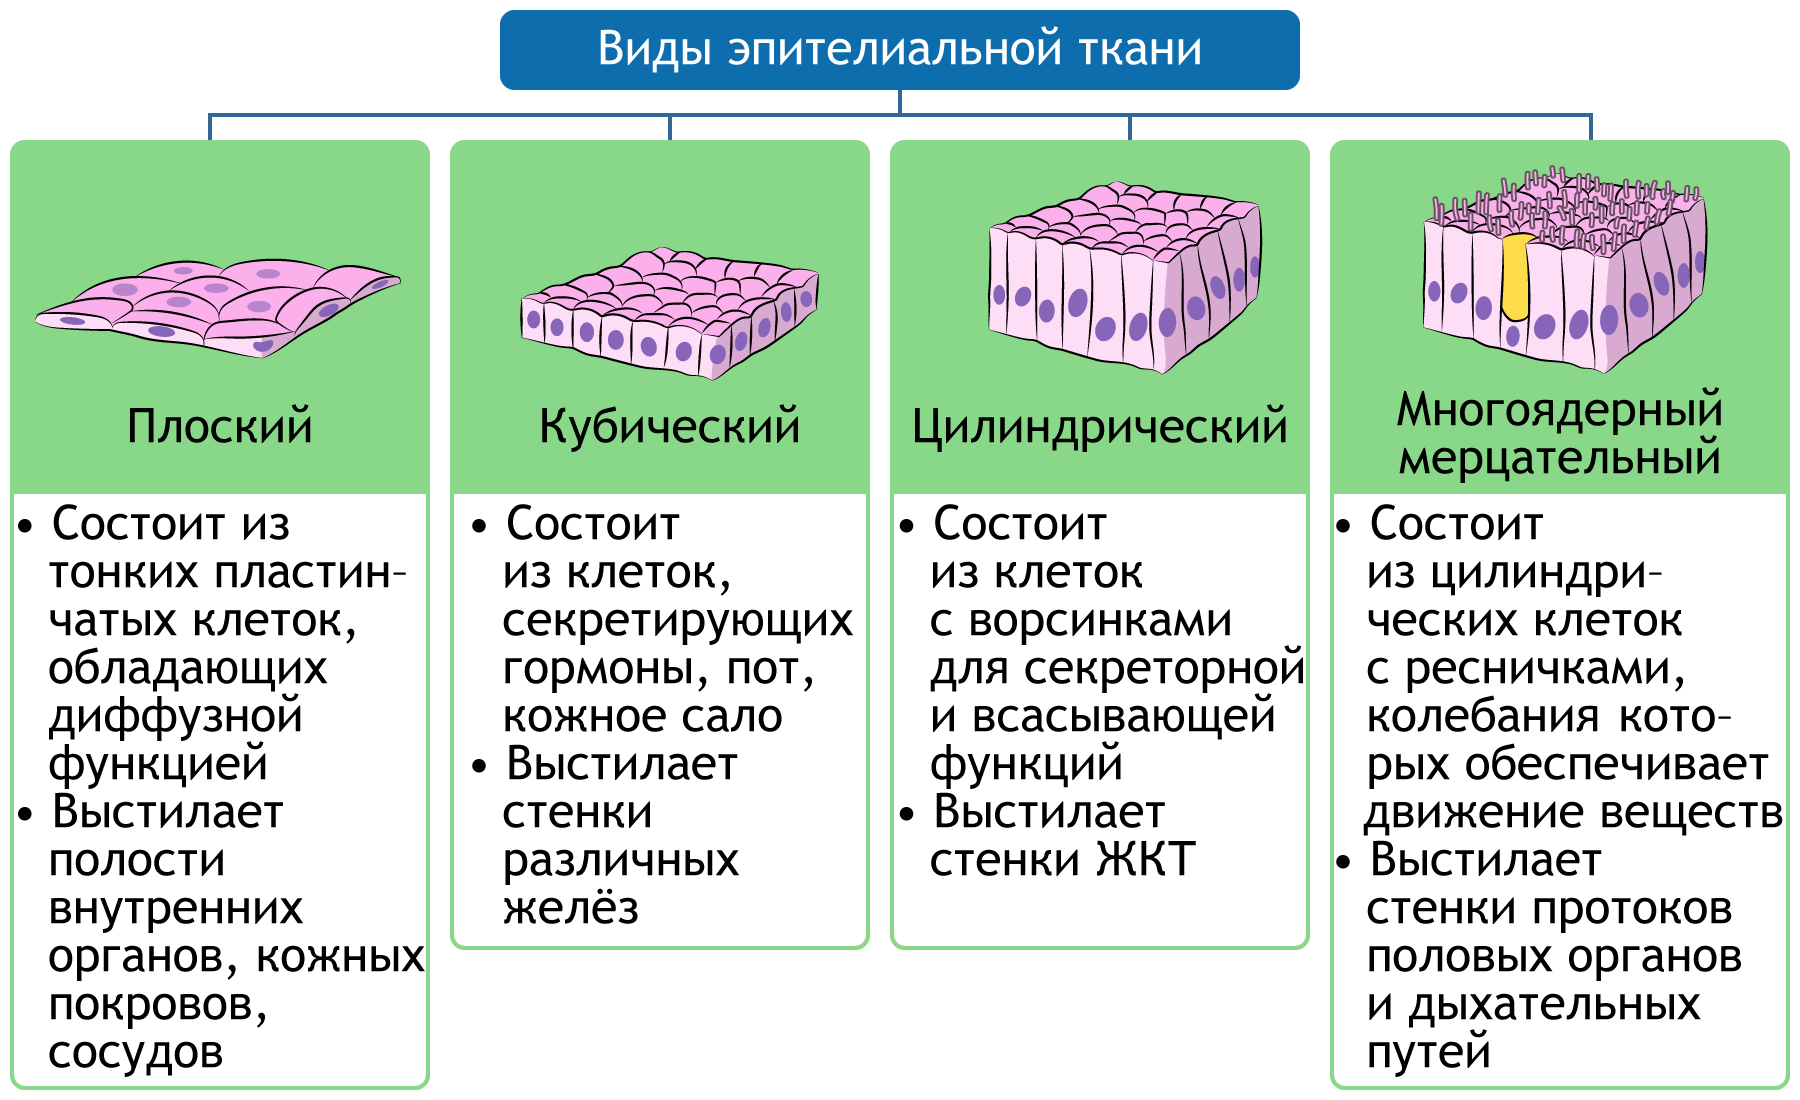 Ткань 1)  соединительная 2)  эпителиальная. Виды эпителиальной ткани таблица. Типы эпителиальной ткани таблица. Строение эпителиальной ткани.